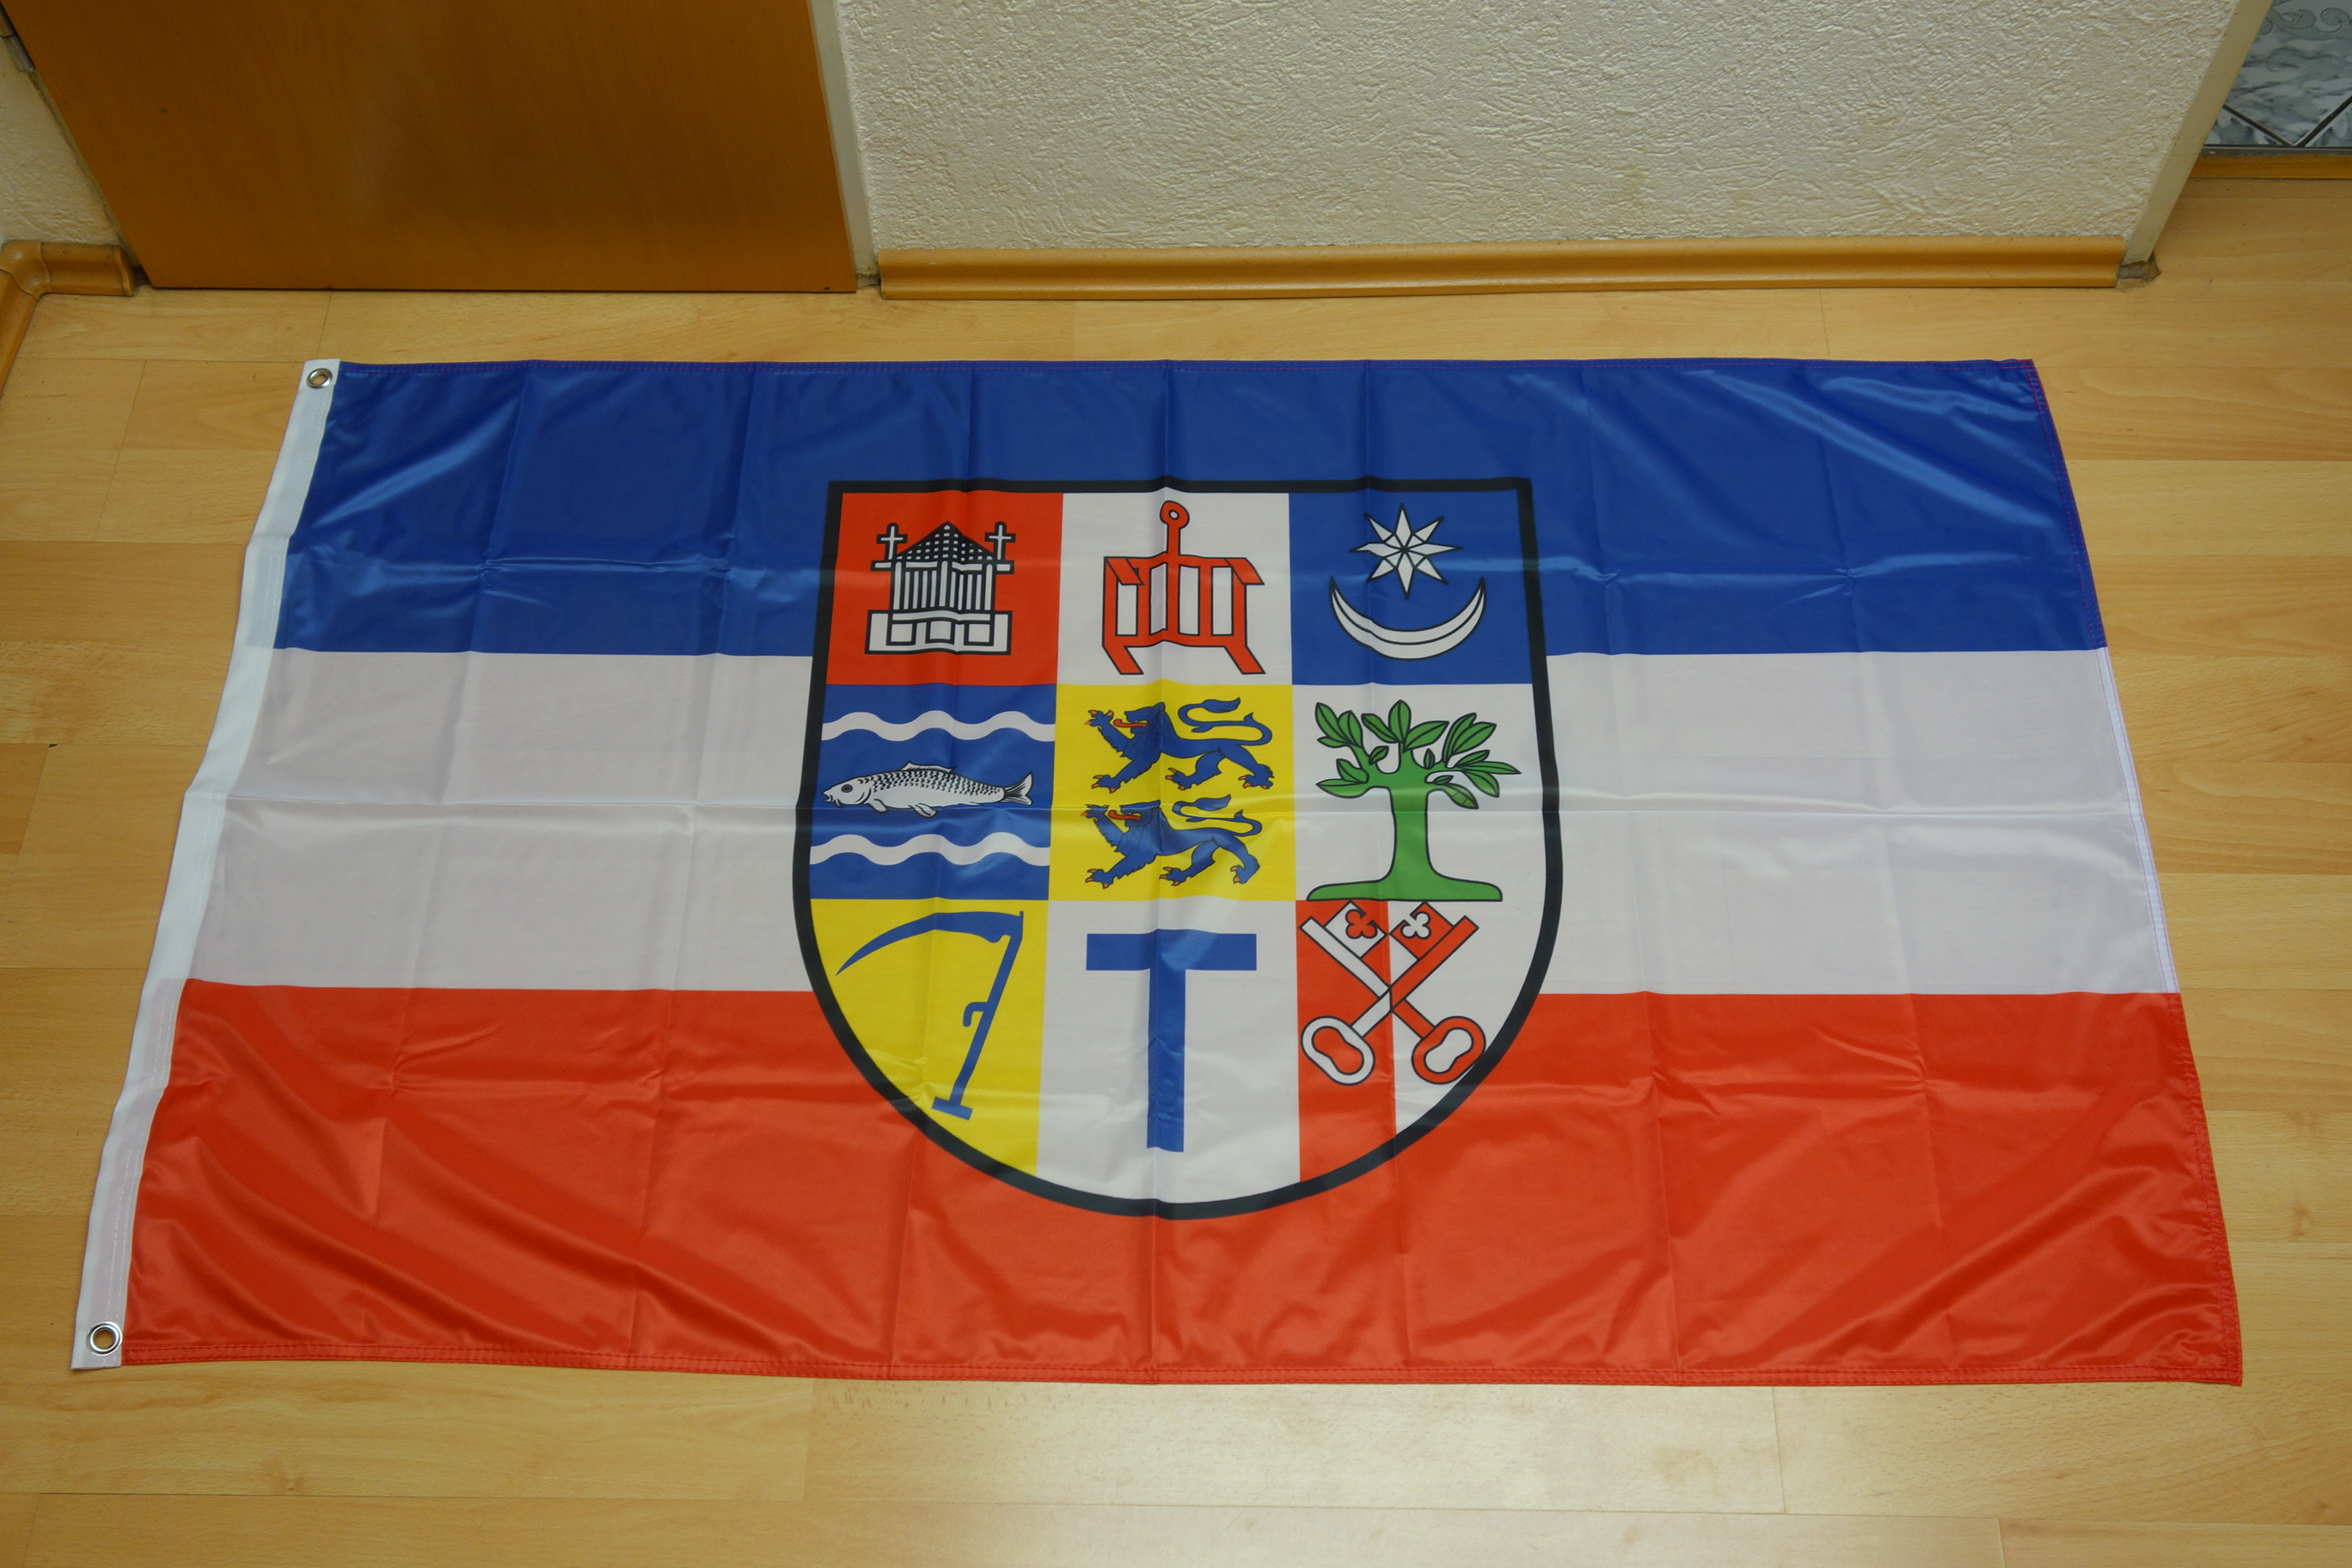 Fahne Flagge Mühlheim an der Ruhr 90 x 150 cm